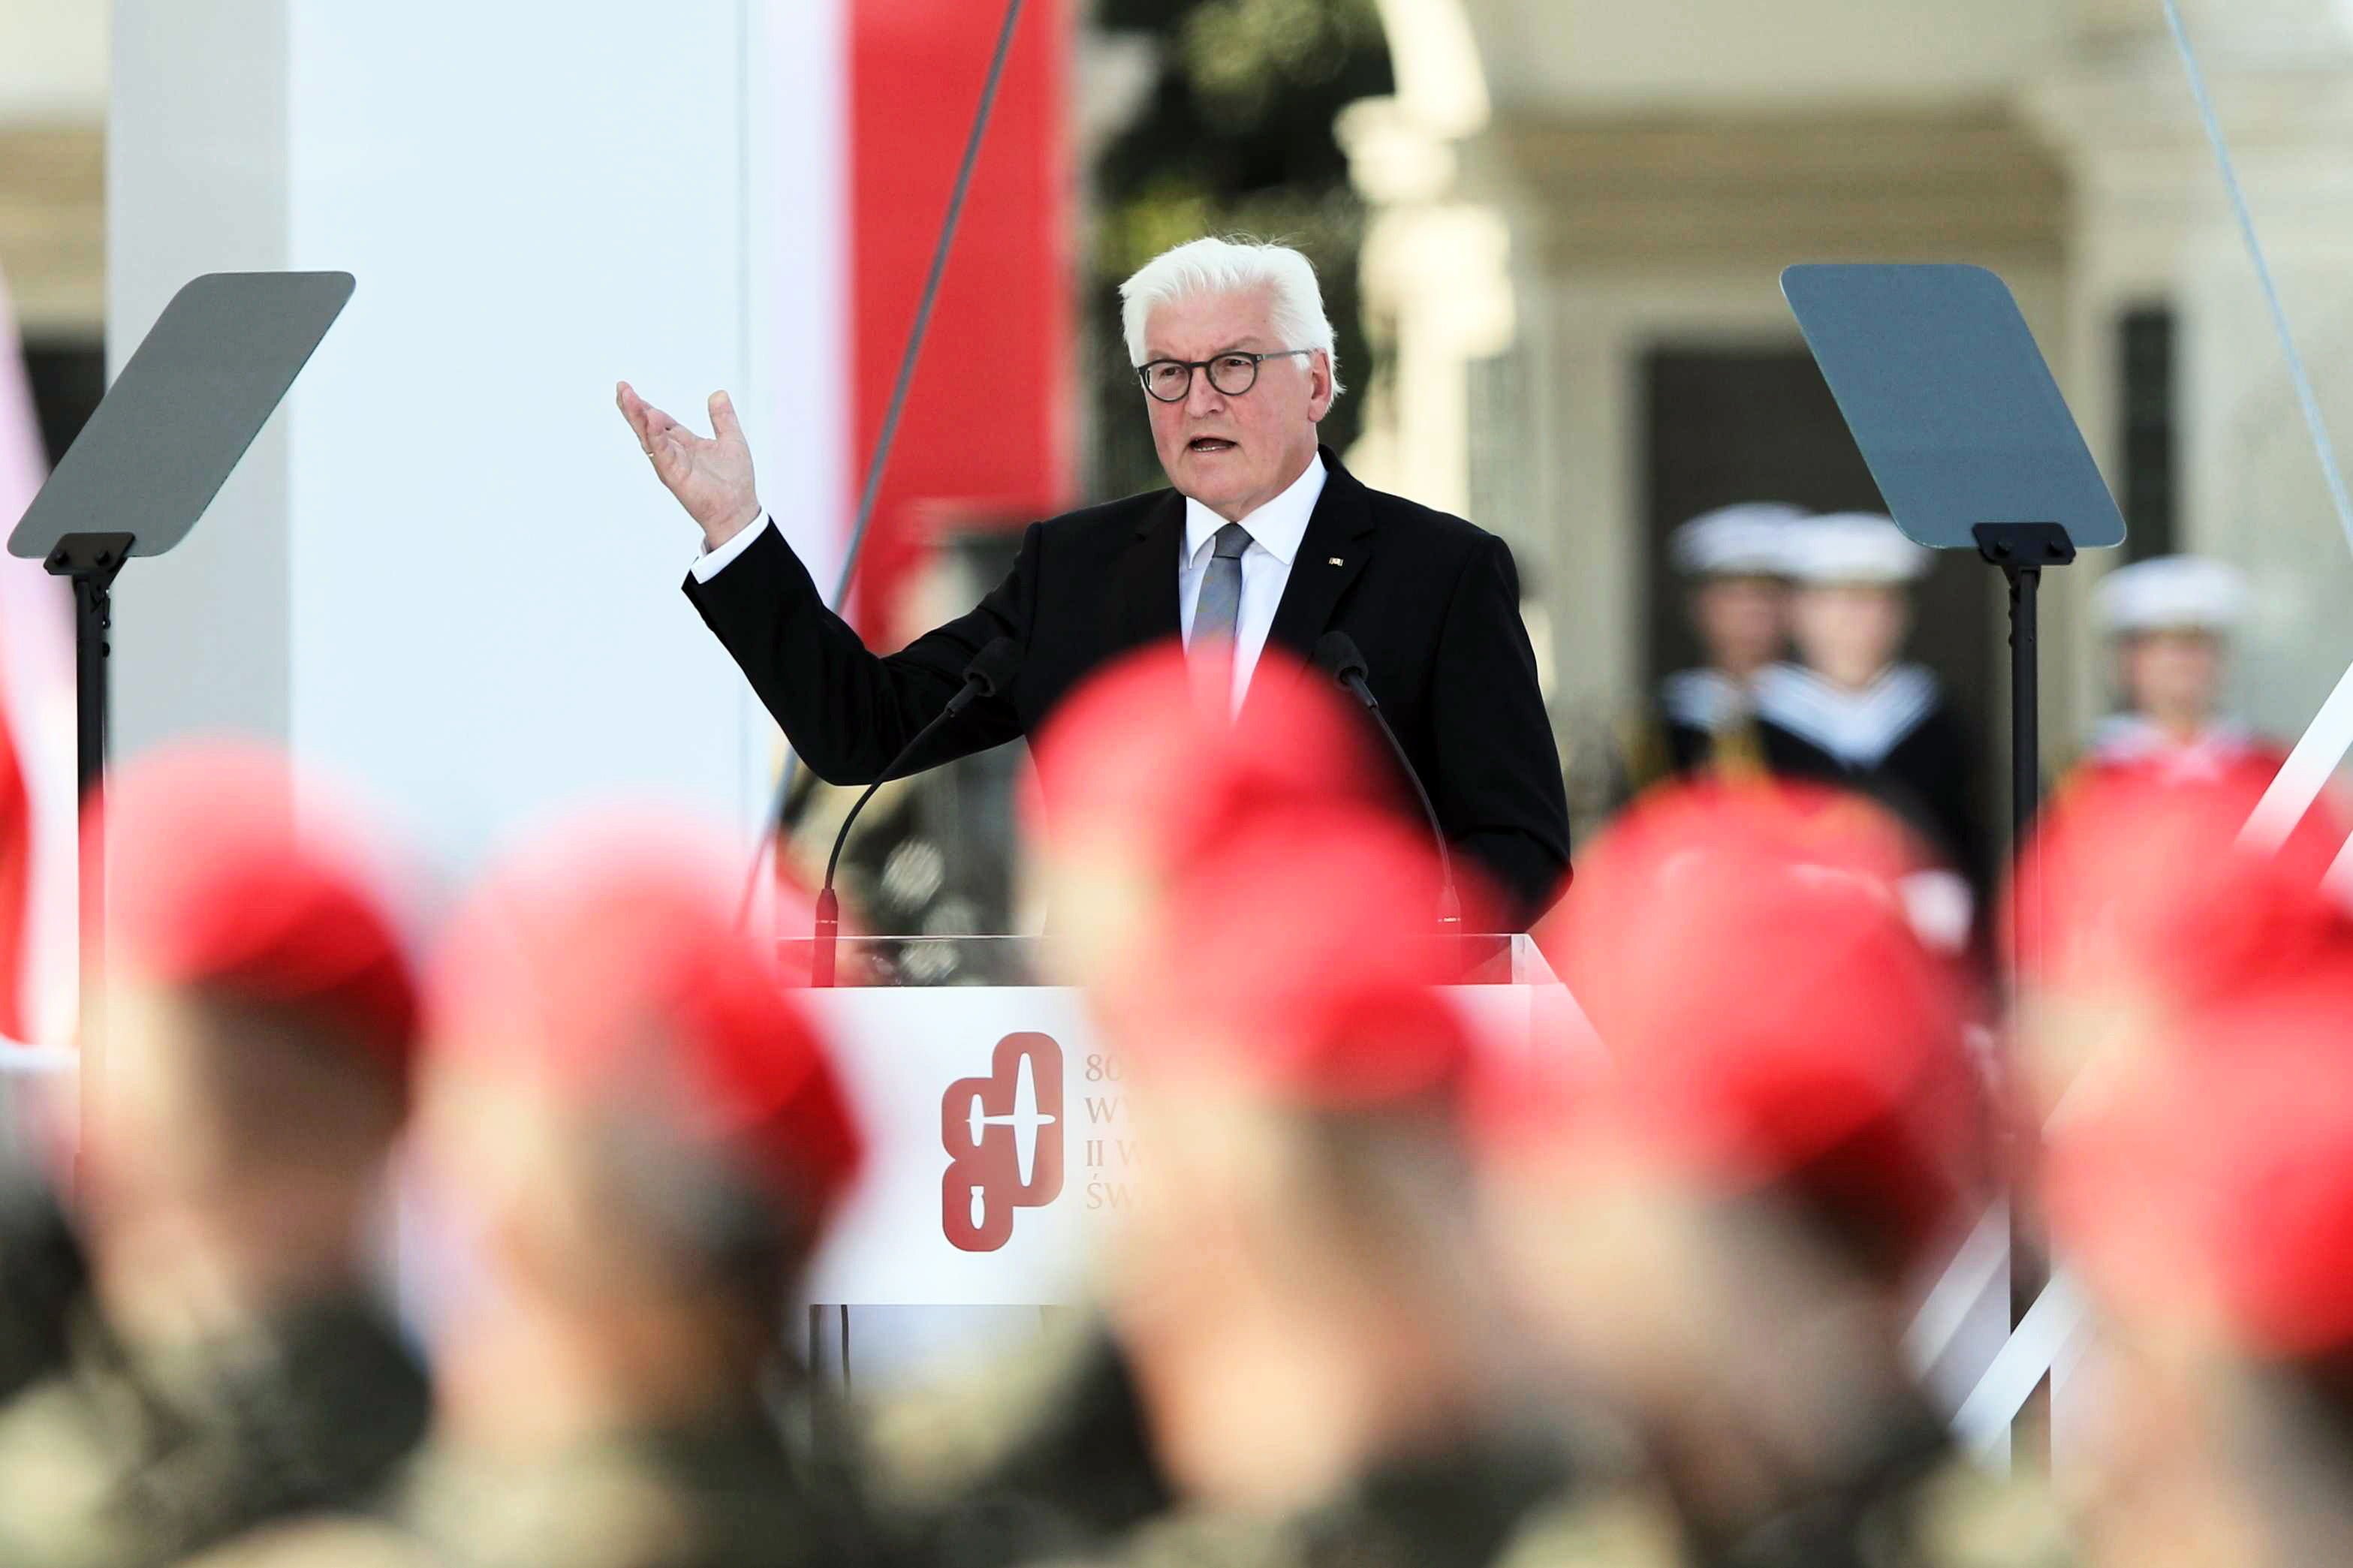 El presidente alemán en el aniversario de la invasión de Polonia: "Agacho la cabeza y pido perdón"